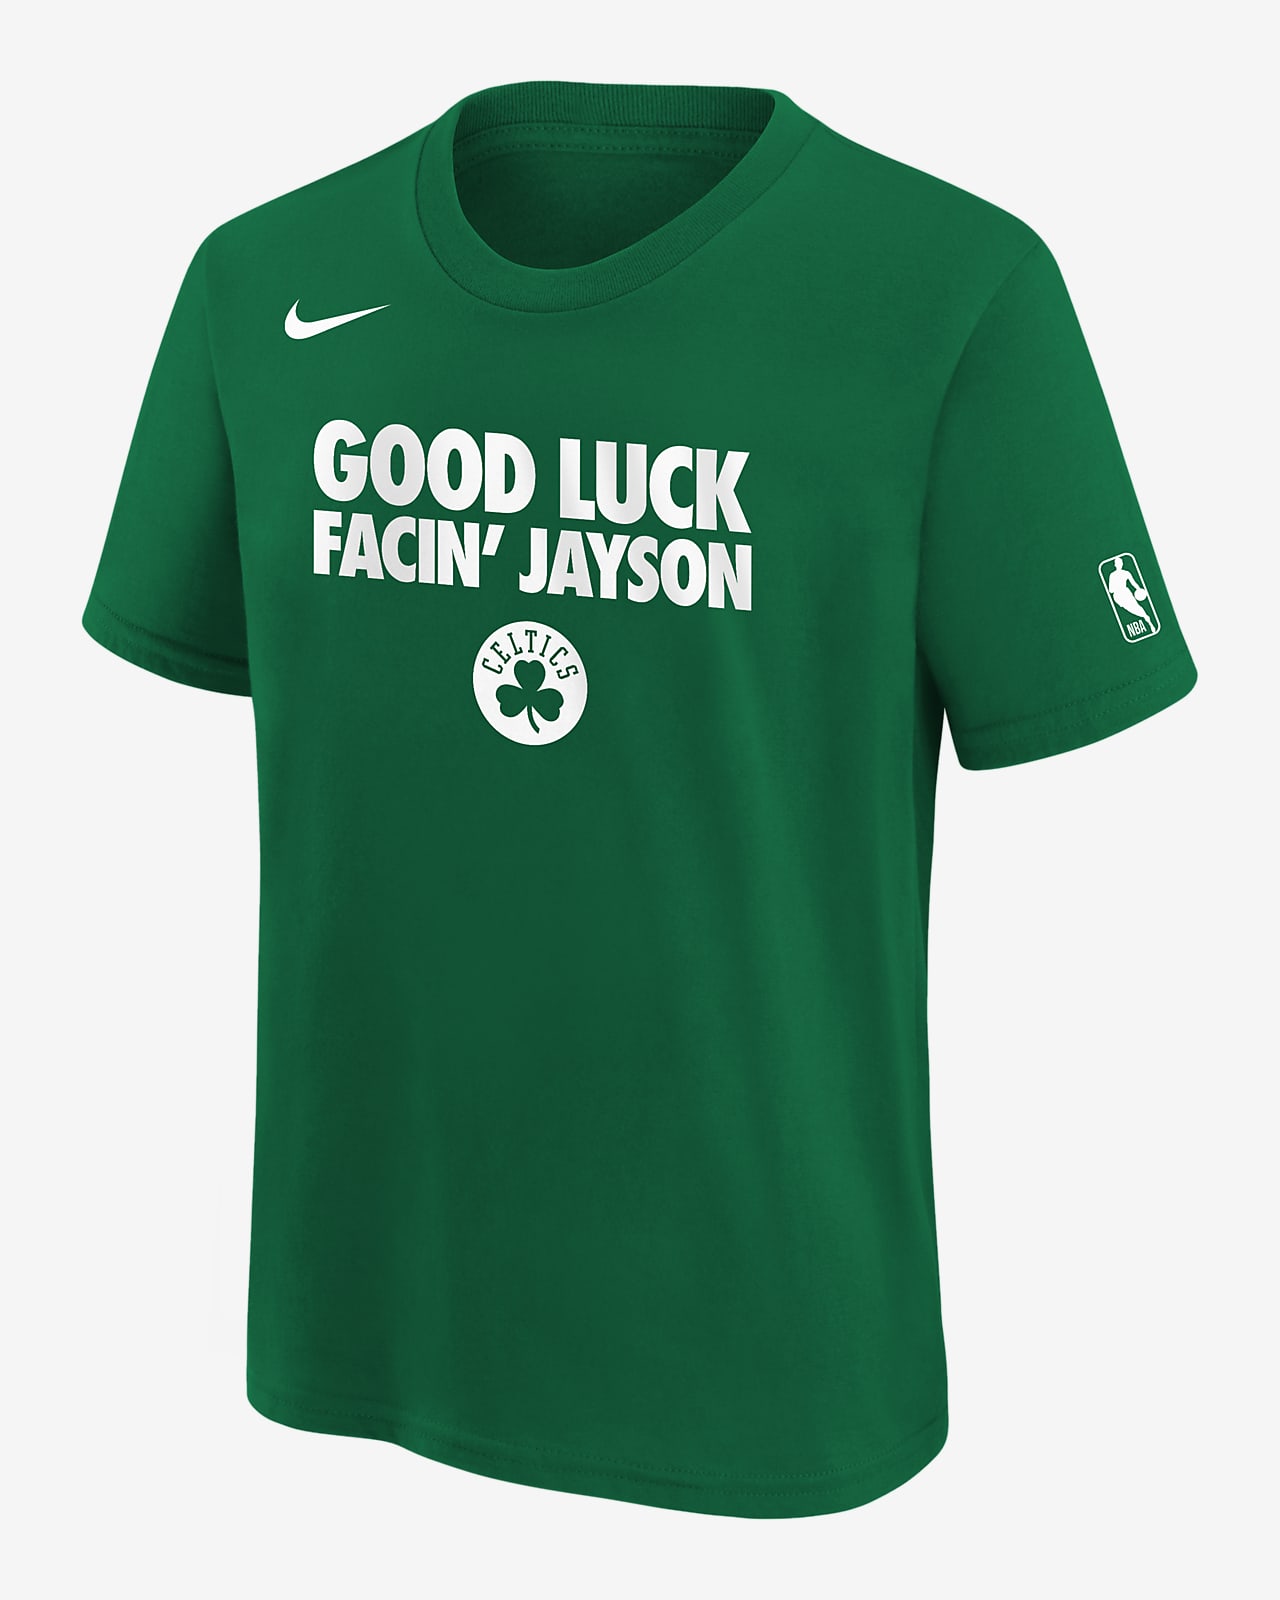 Playera Nike de la NBA para niños talla grande Jayson Tatum Boston Celtics